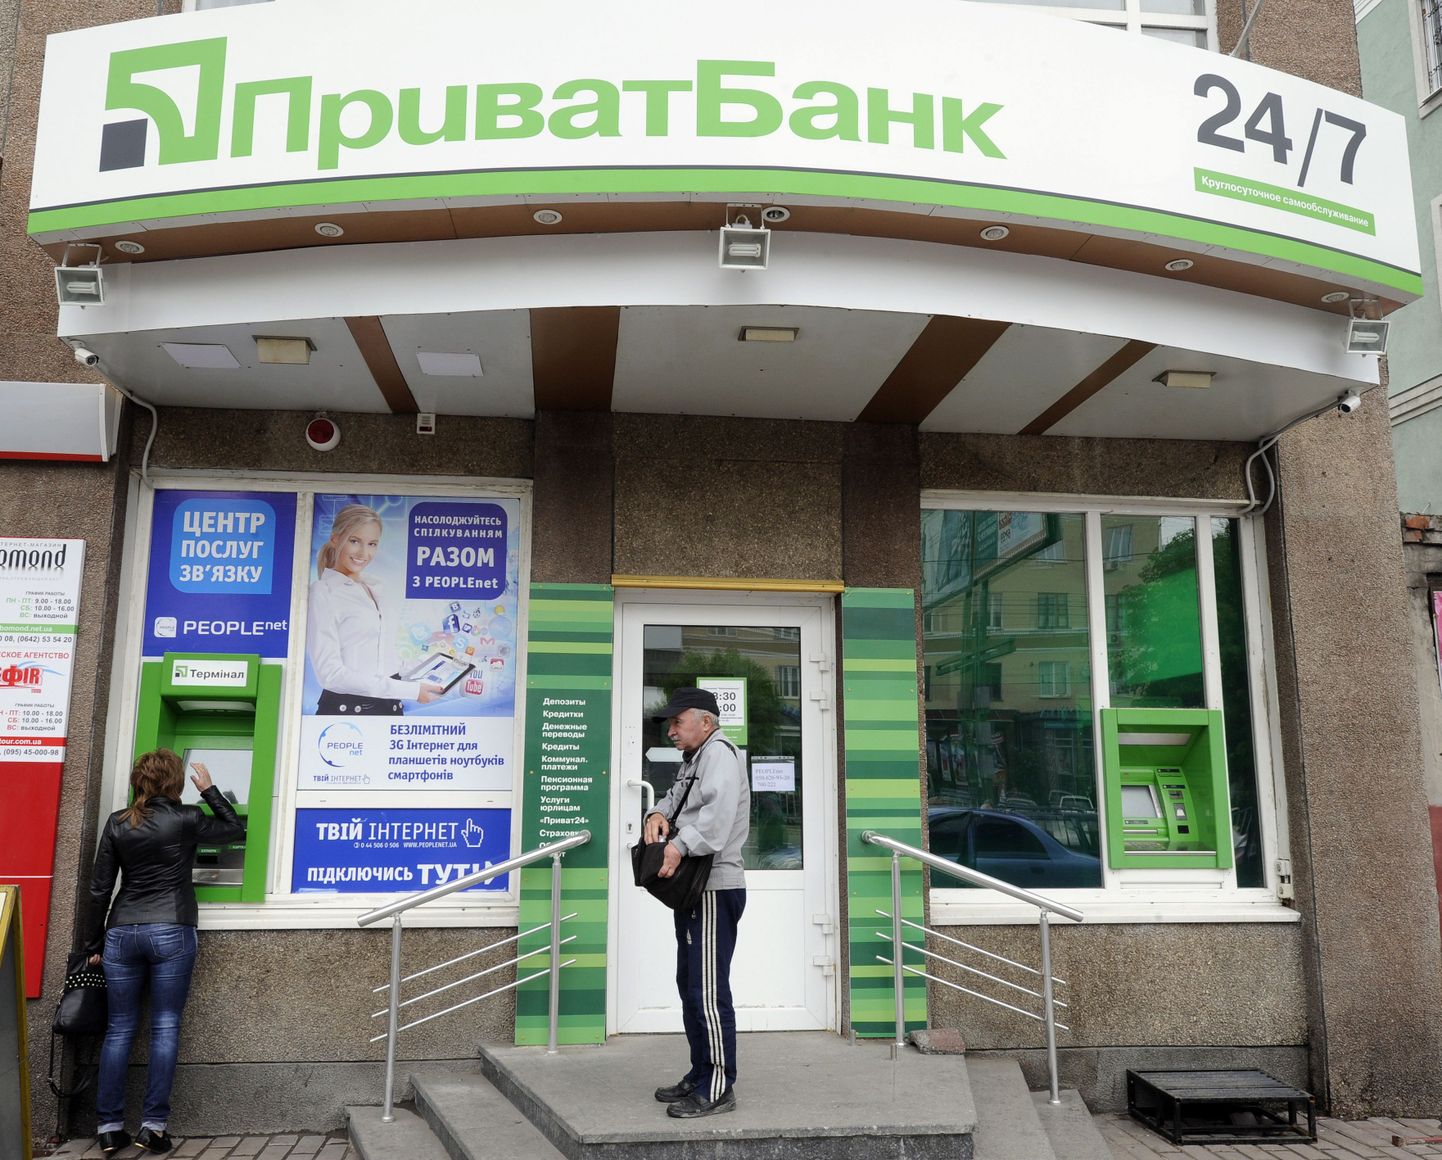 Tänaseks riigistatud PrivatBanki audit tõi PwC-le Ukrainas pankade ametliku auditeerimise keelu järgmiseks kolmeks aastaks.